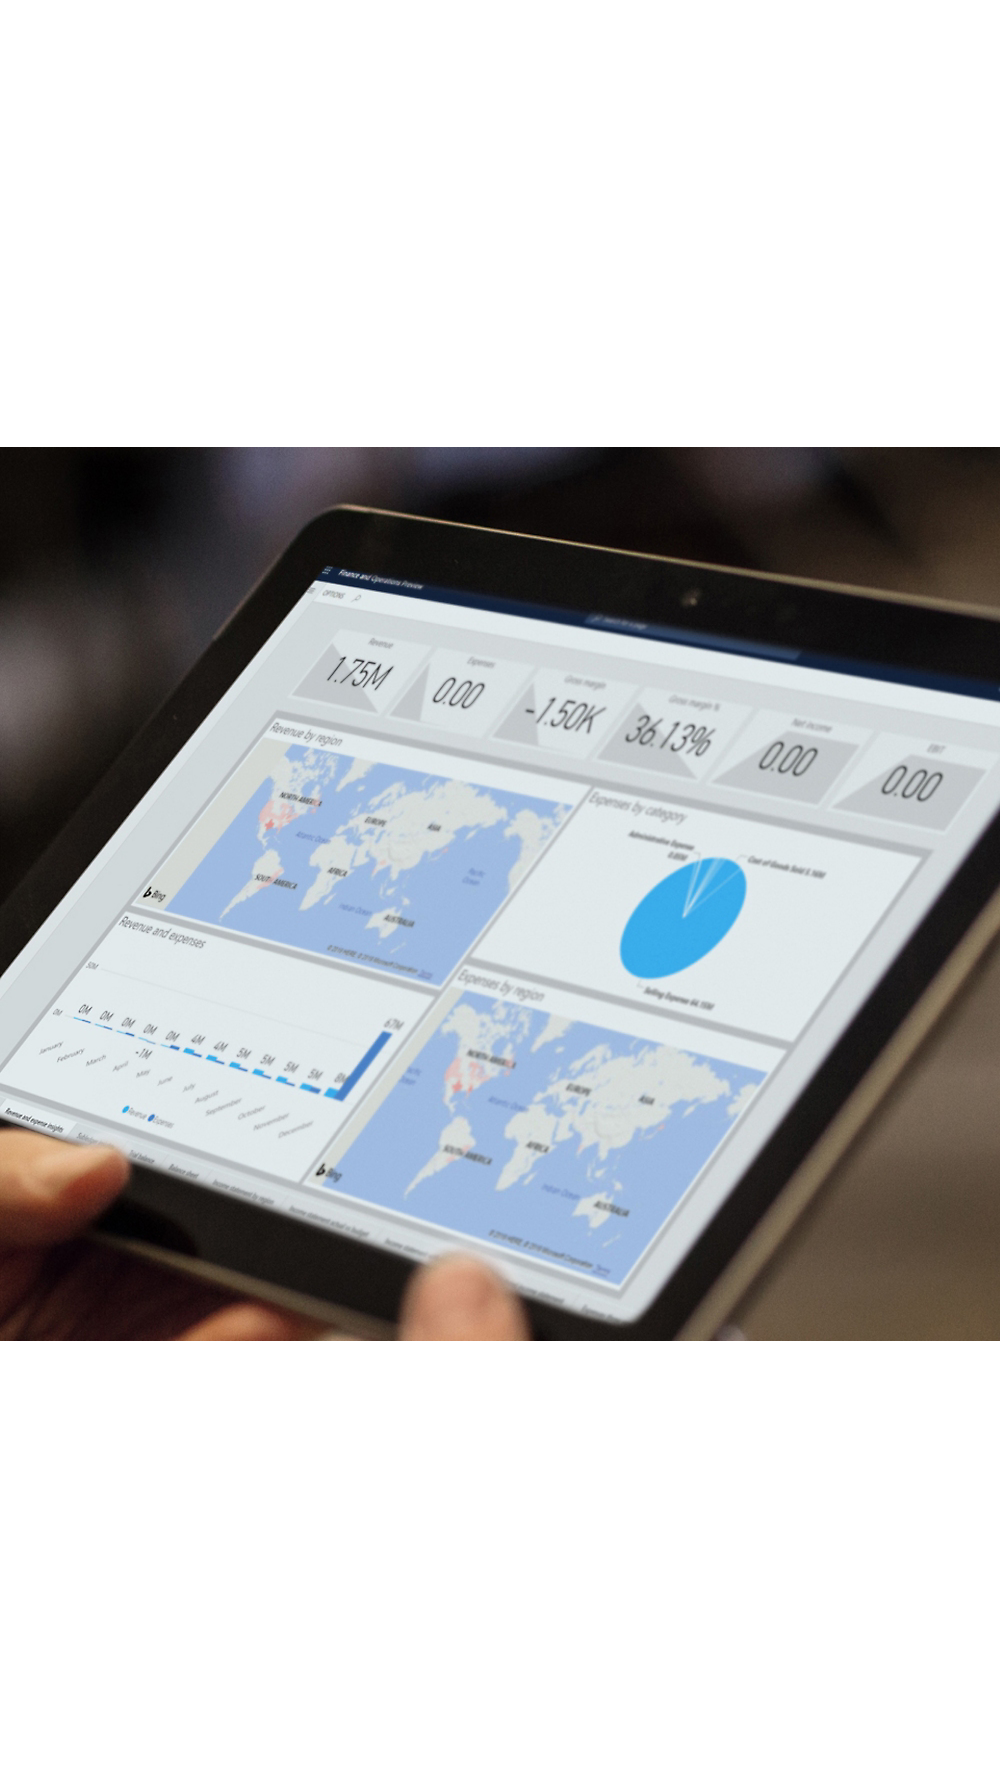 Küresel veri ölçümlerini yansıtan haritalar ve grafikler gibi analiz çizelgelerinin görüntülendiği bir tablet tutan kişi.